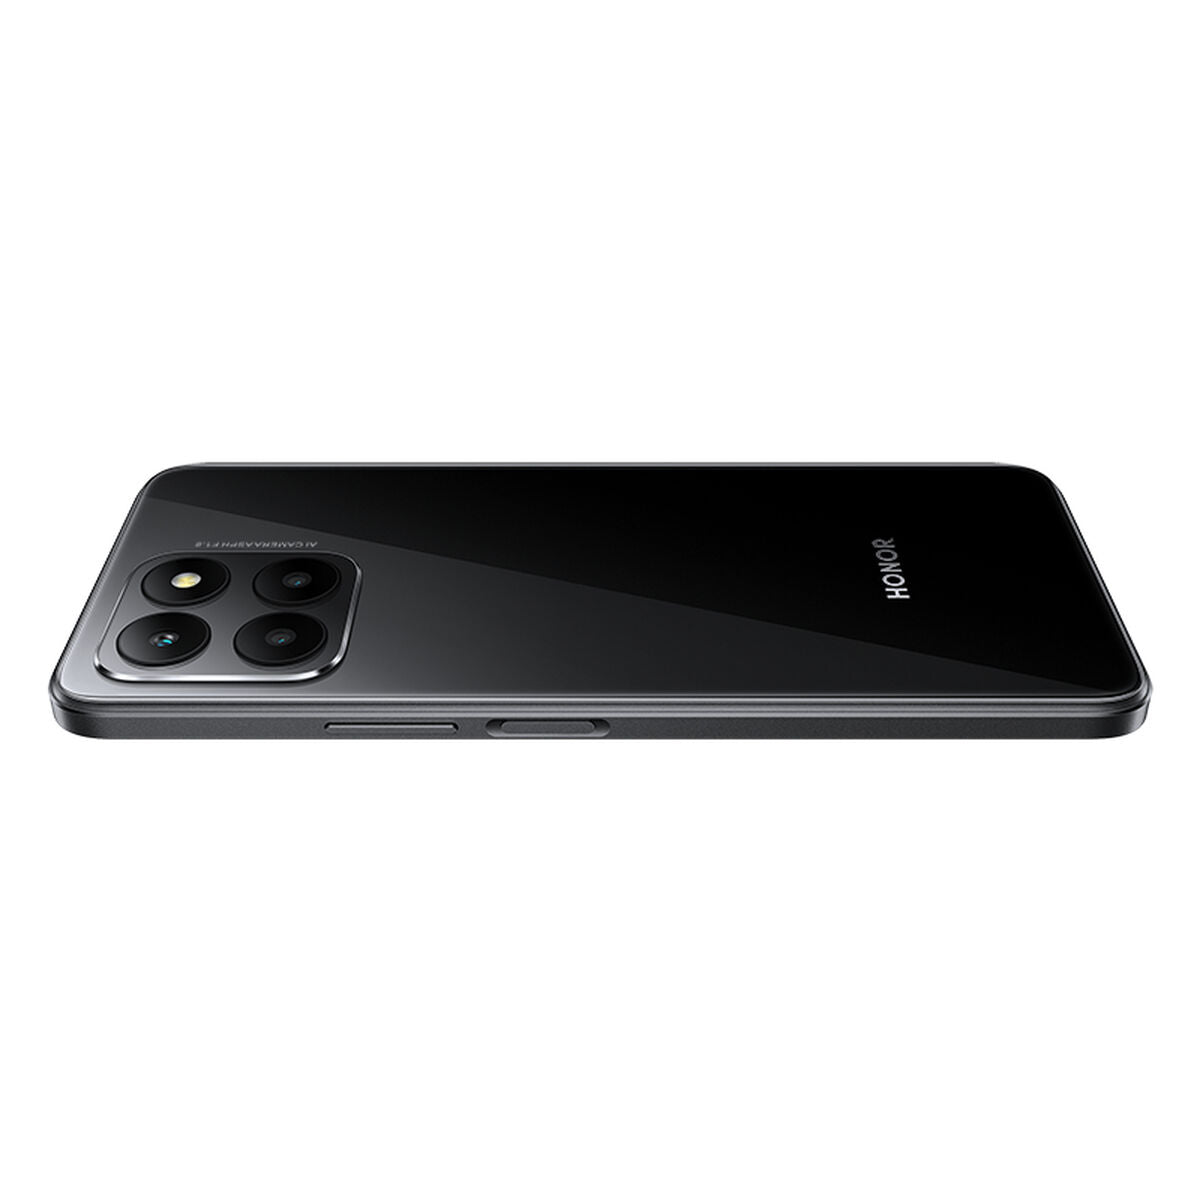 Smartphone Honor 5109APYK 4 GB RAM Negro (Reacondicionado A+)